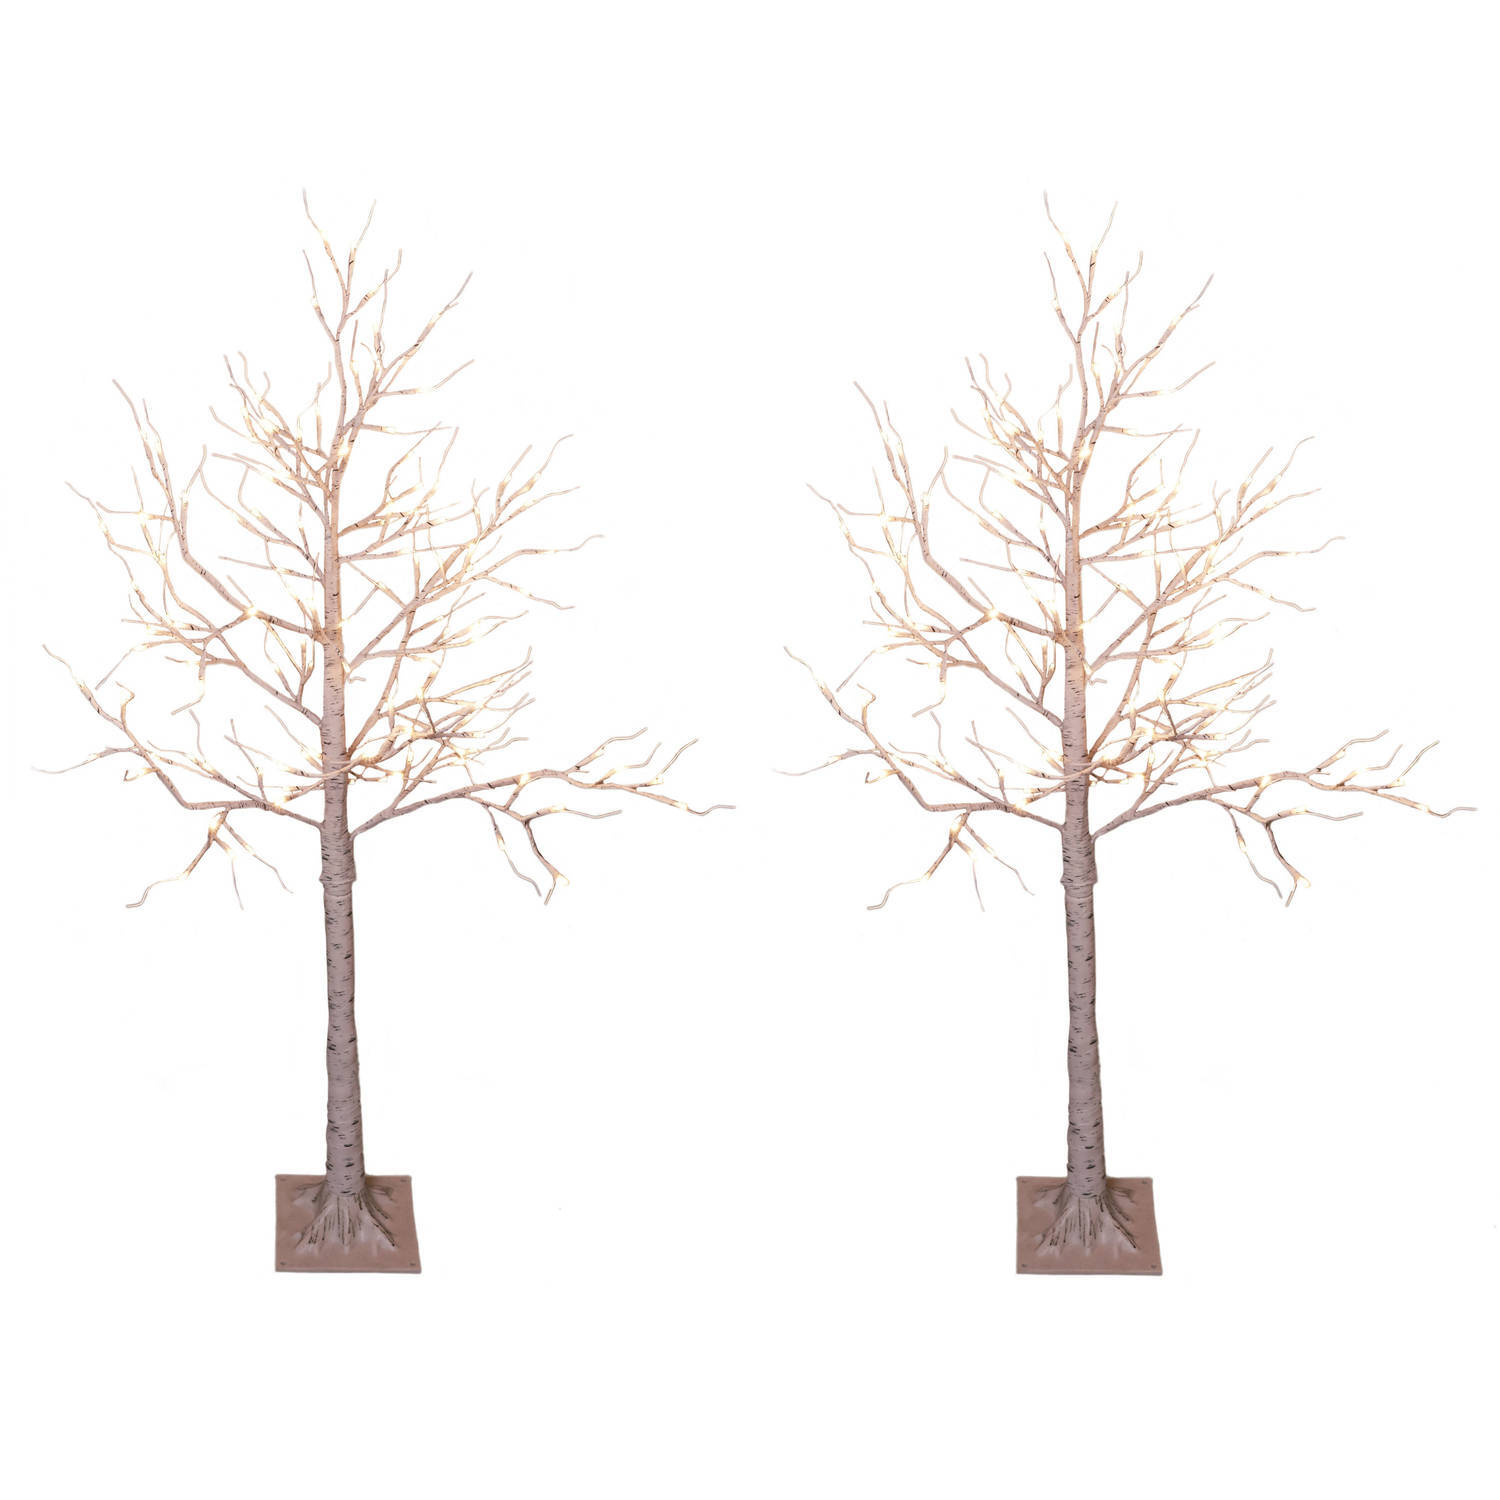 Lumineo 2x stuks verlichte figuren witte lichtboom/metalen boom/berkenboom met 120 led lichtjes 130 cm - kerstverlichting figuur